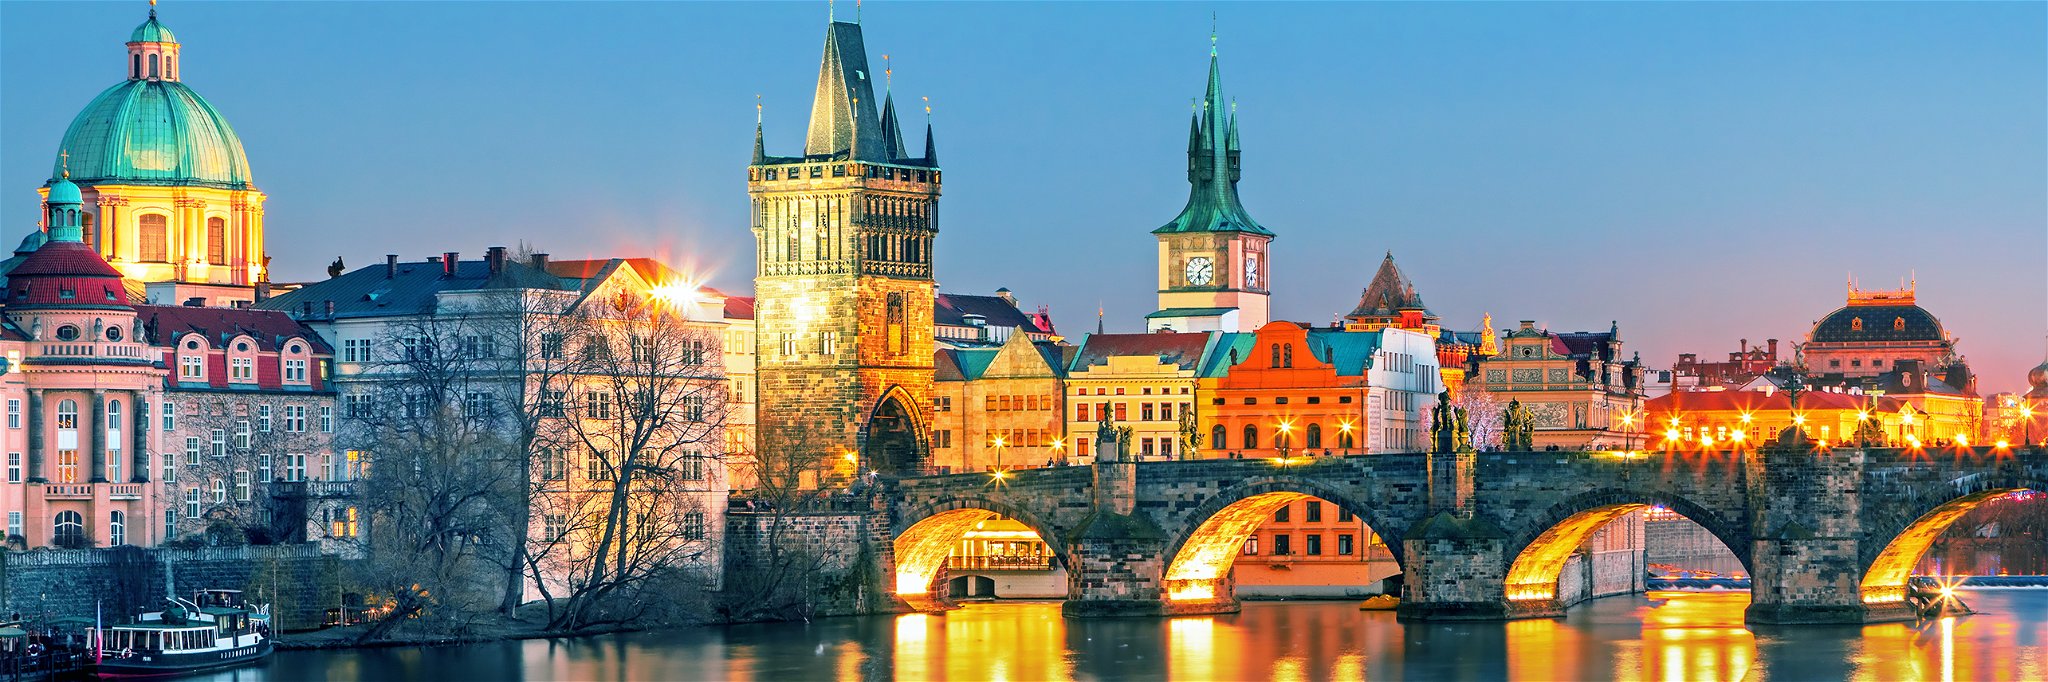 Prag zählt zu einer der beliebtesten Destinationen für digitale Nomaden